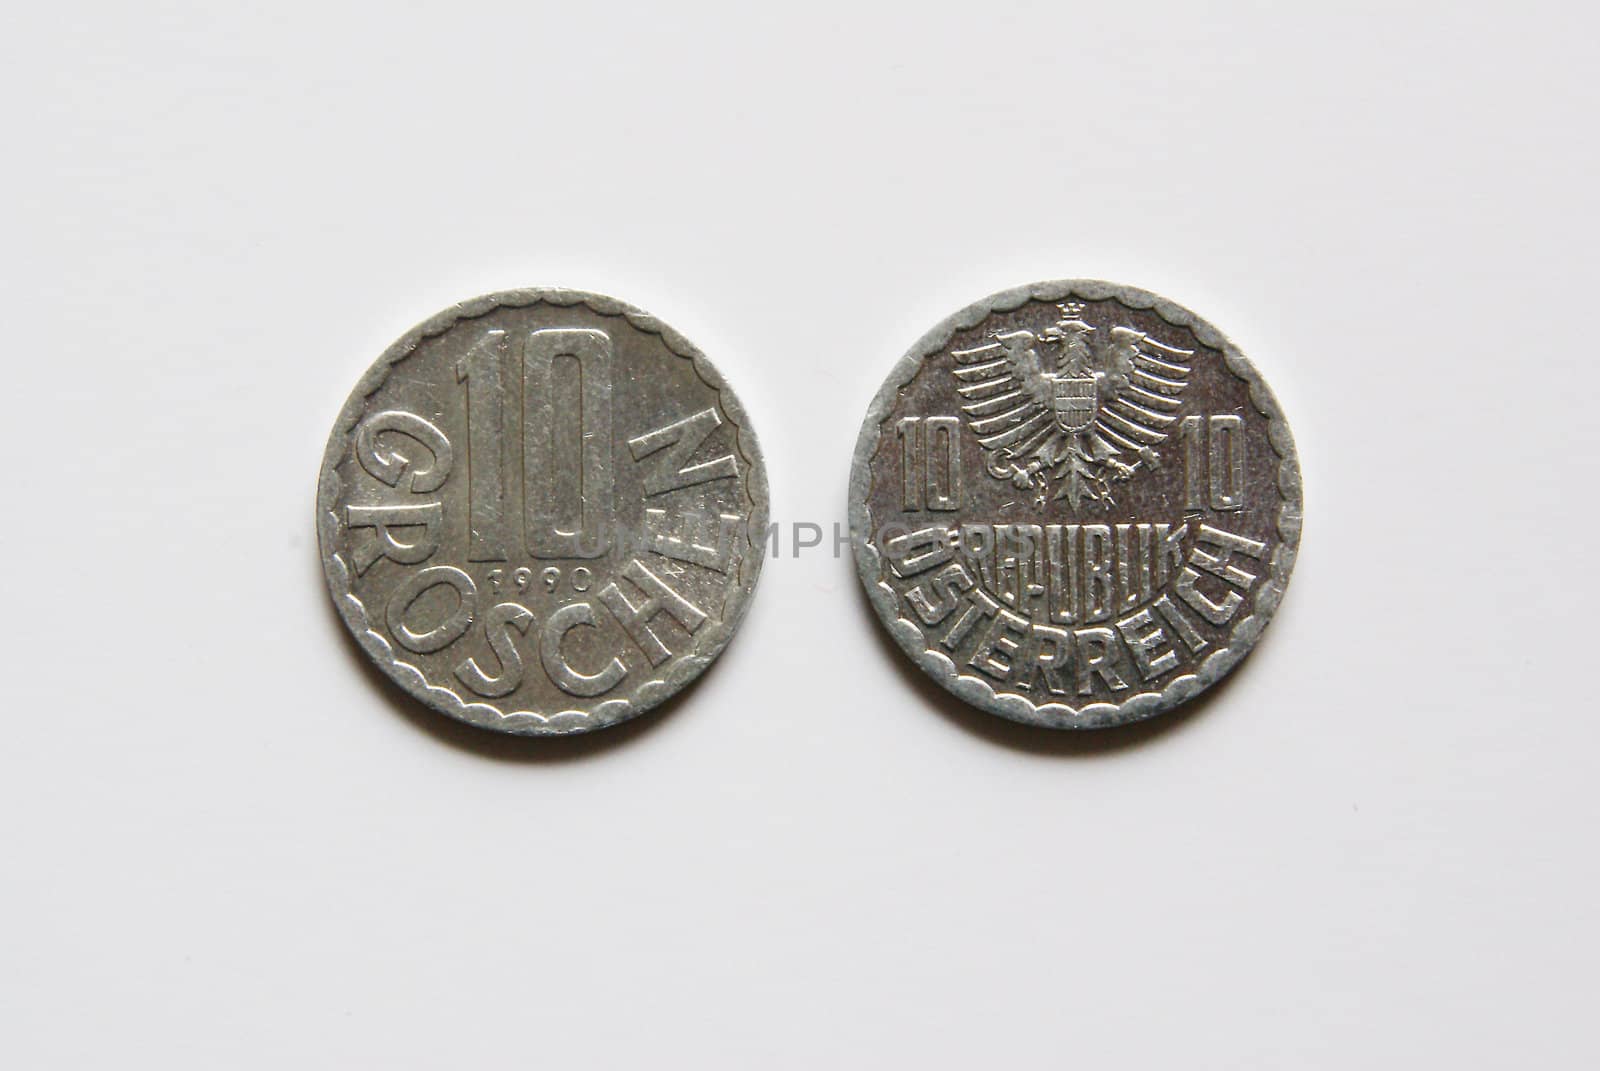 Old Austrian 10 Groschen coins (before Euro)